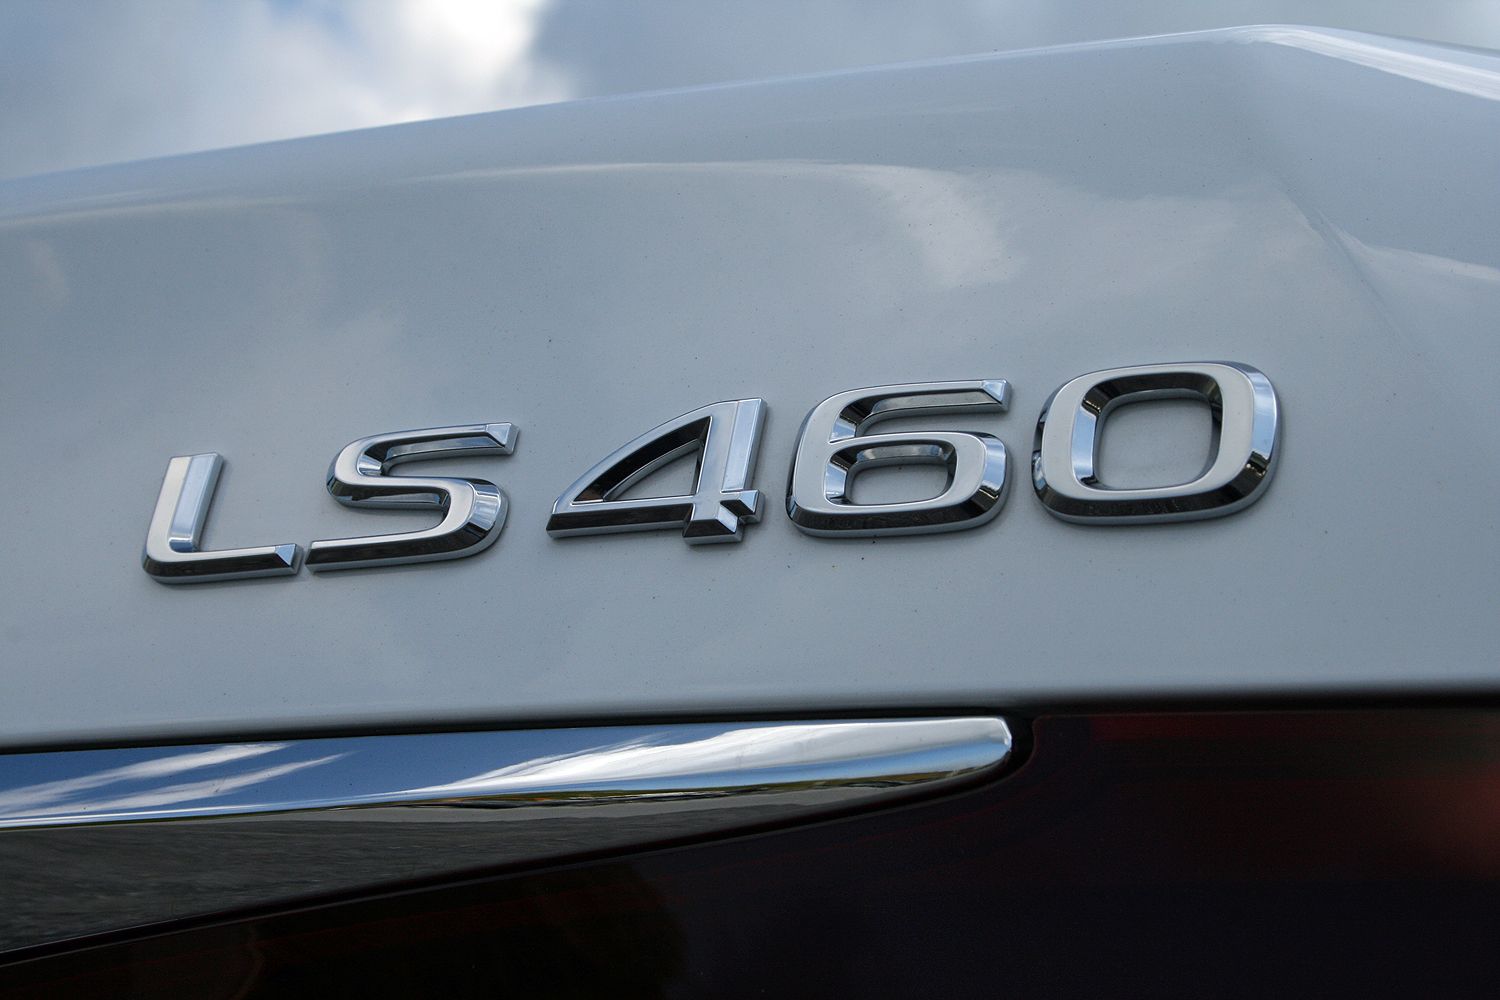 2015 Lexus LS460 F Sport - Driven